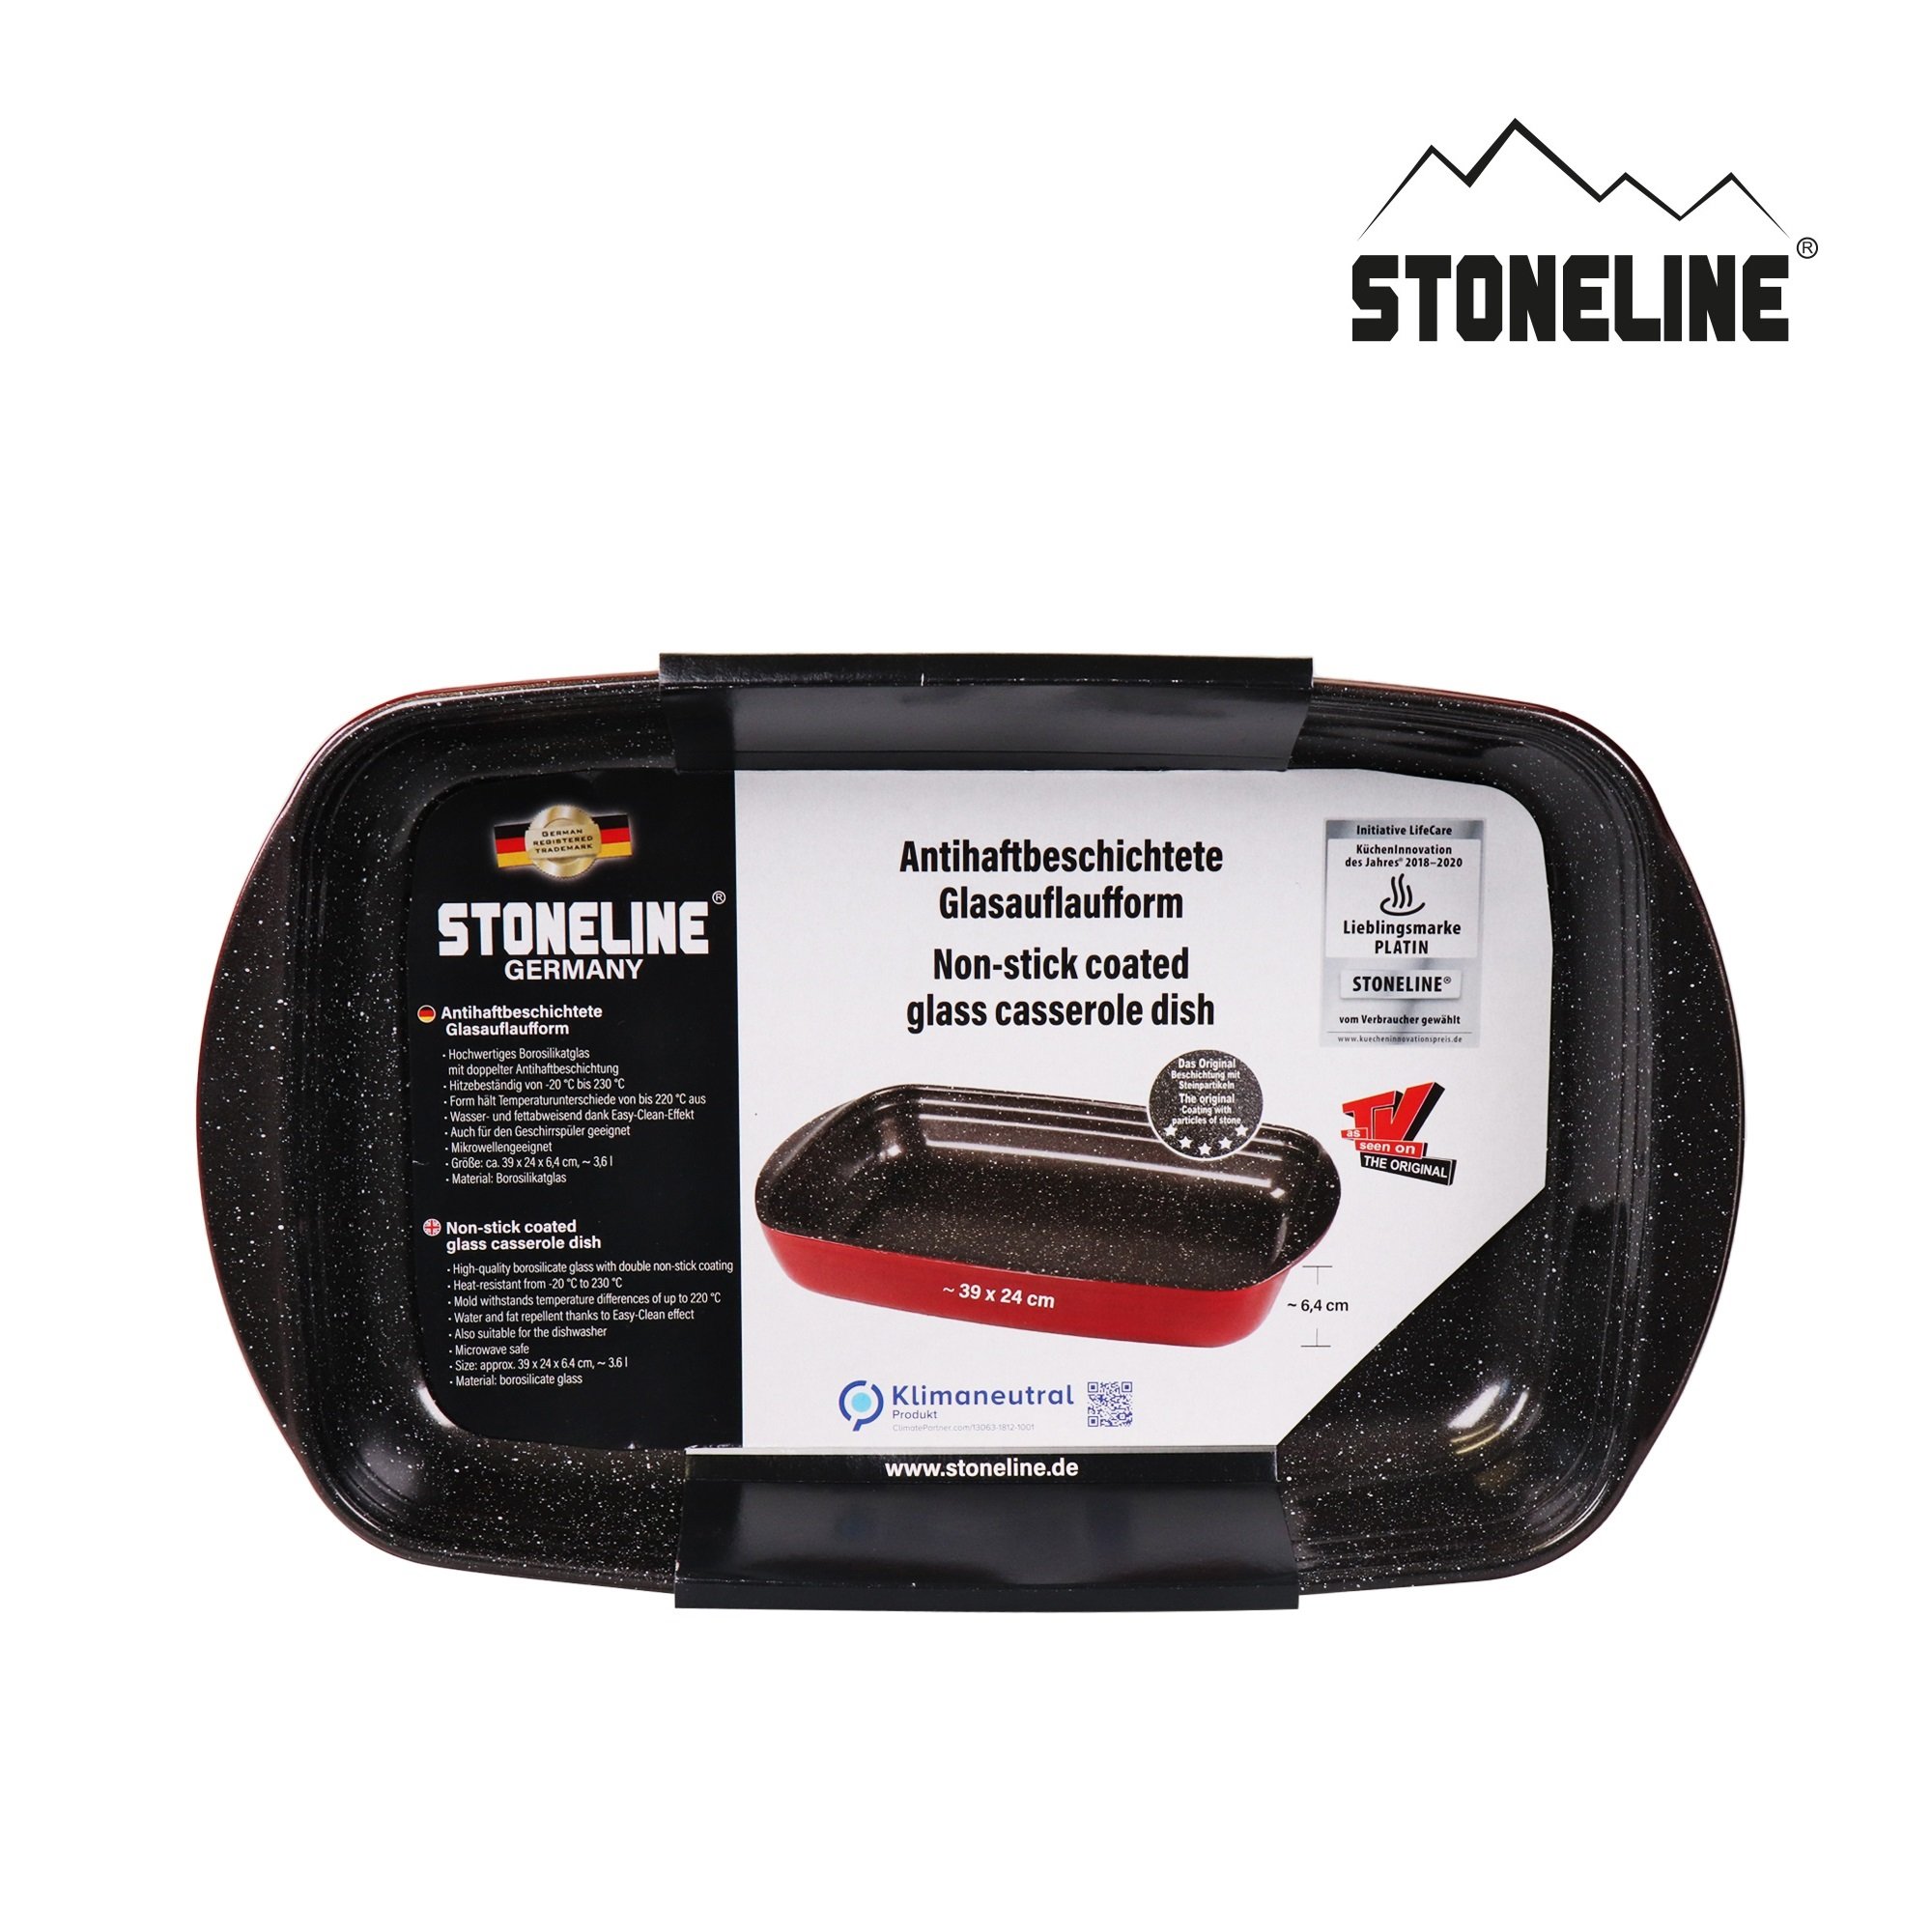 STONELINE® Pirofila Teglia Rettangolare 39x24 cm | Antiaderente Vetro Borosilicato